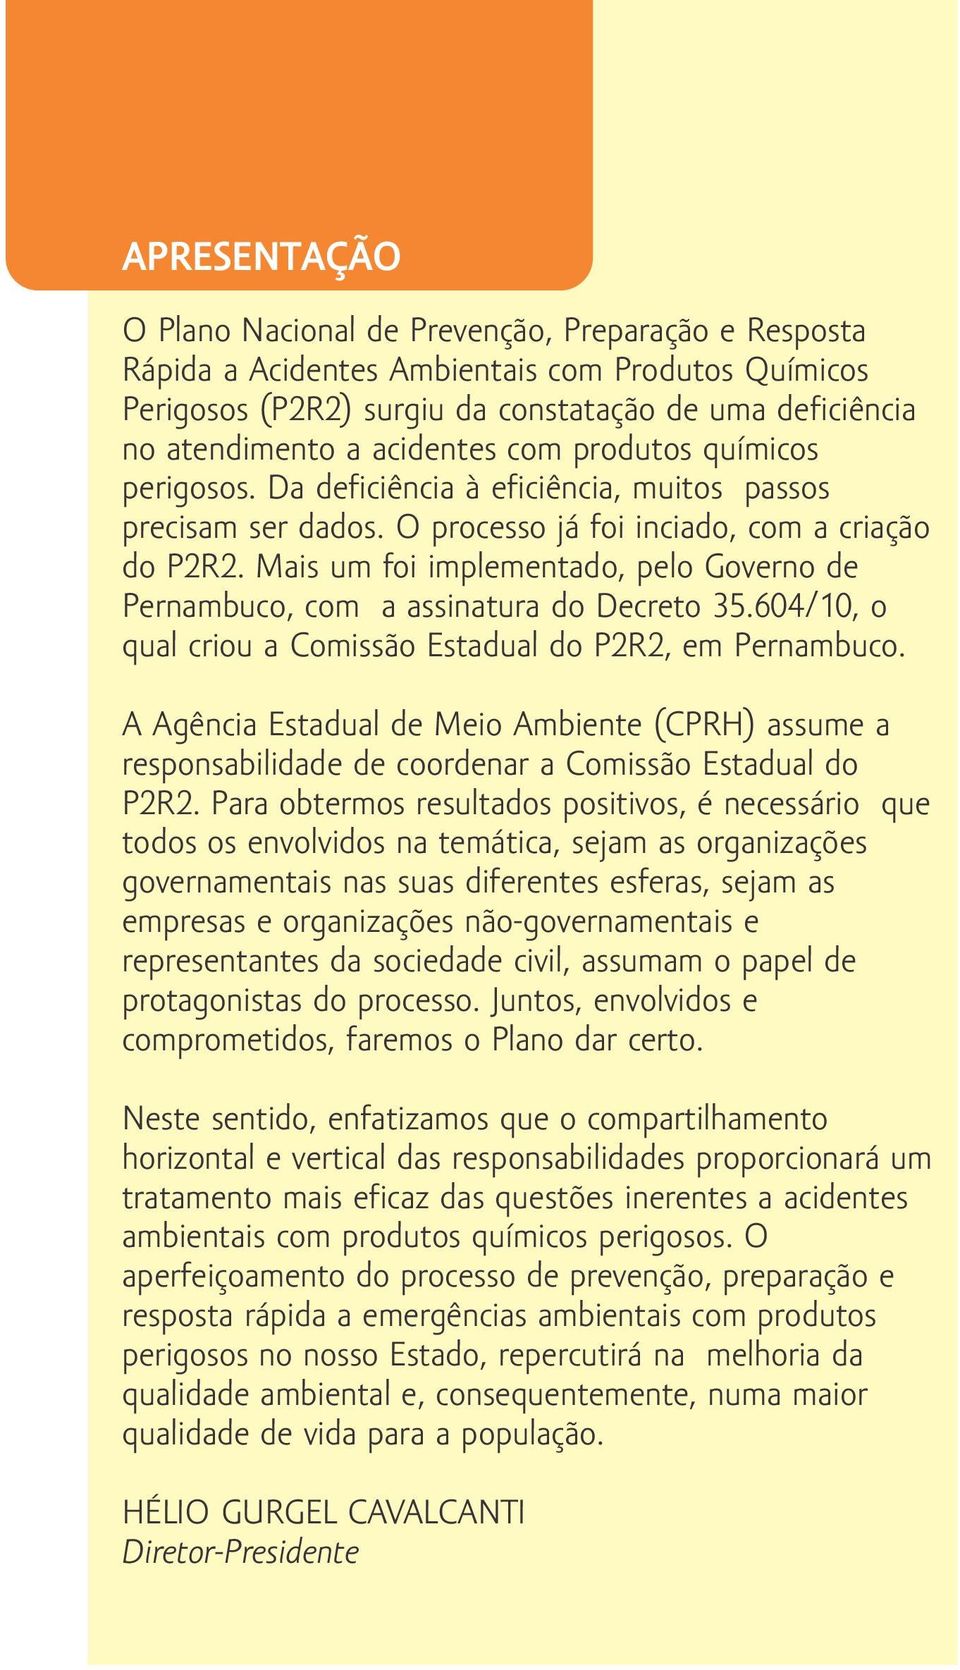 Mais um foi implementado, pelo Governo de Pernambuco, com a assinatura do Decreto 35.604/10, o qual criou a Comissão Estadual do P2R2, em Pernambuco.